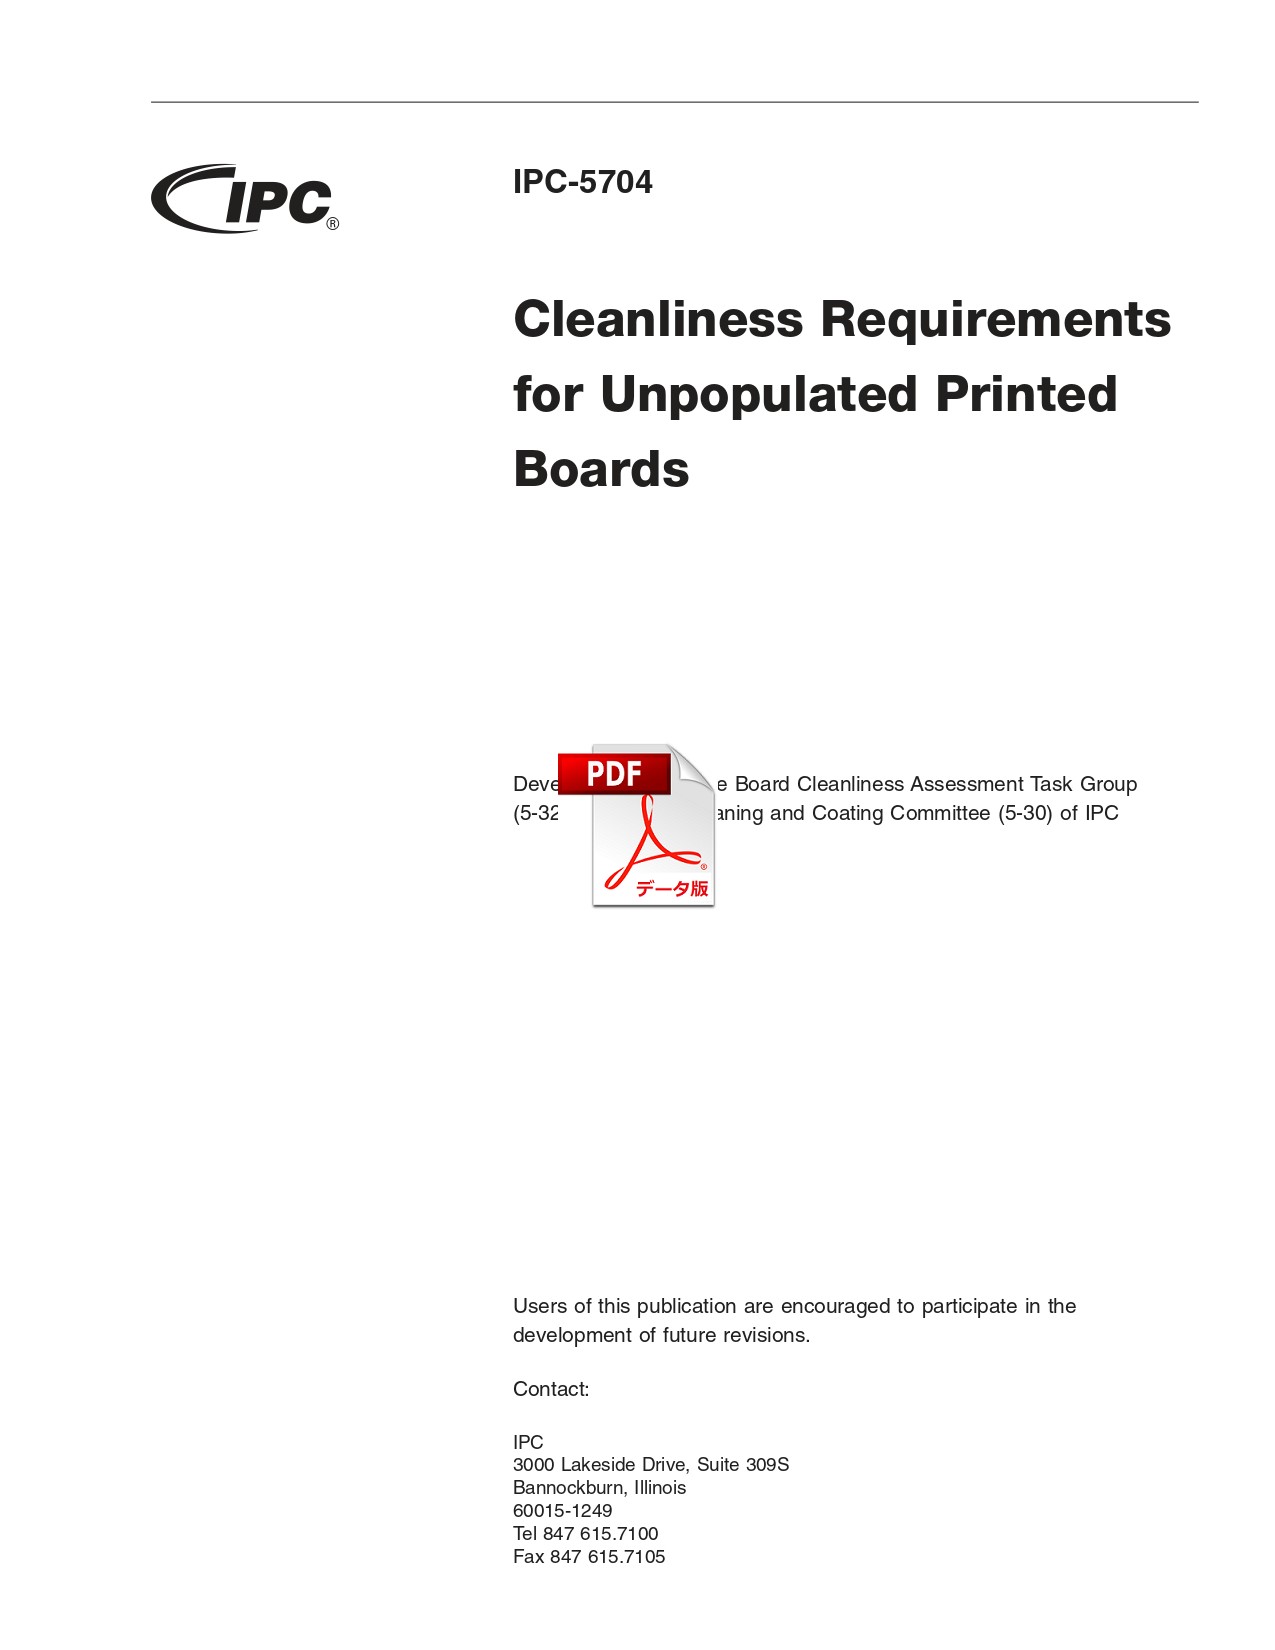 【英語版】IPC-5704: Cleanliness Requirements for Unpopulated Printed Boards